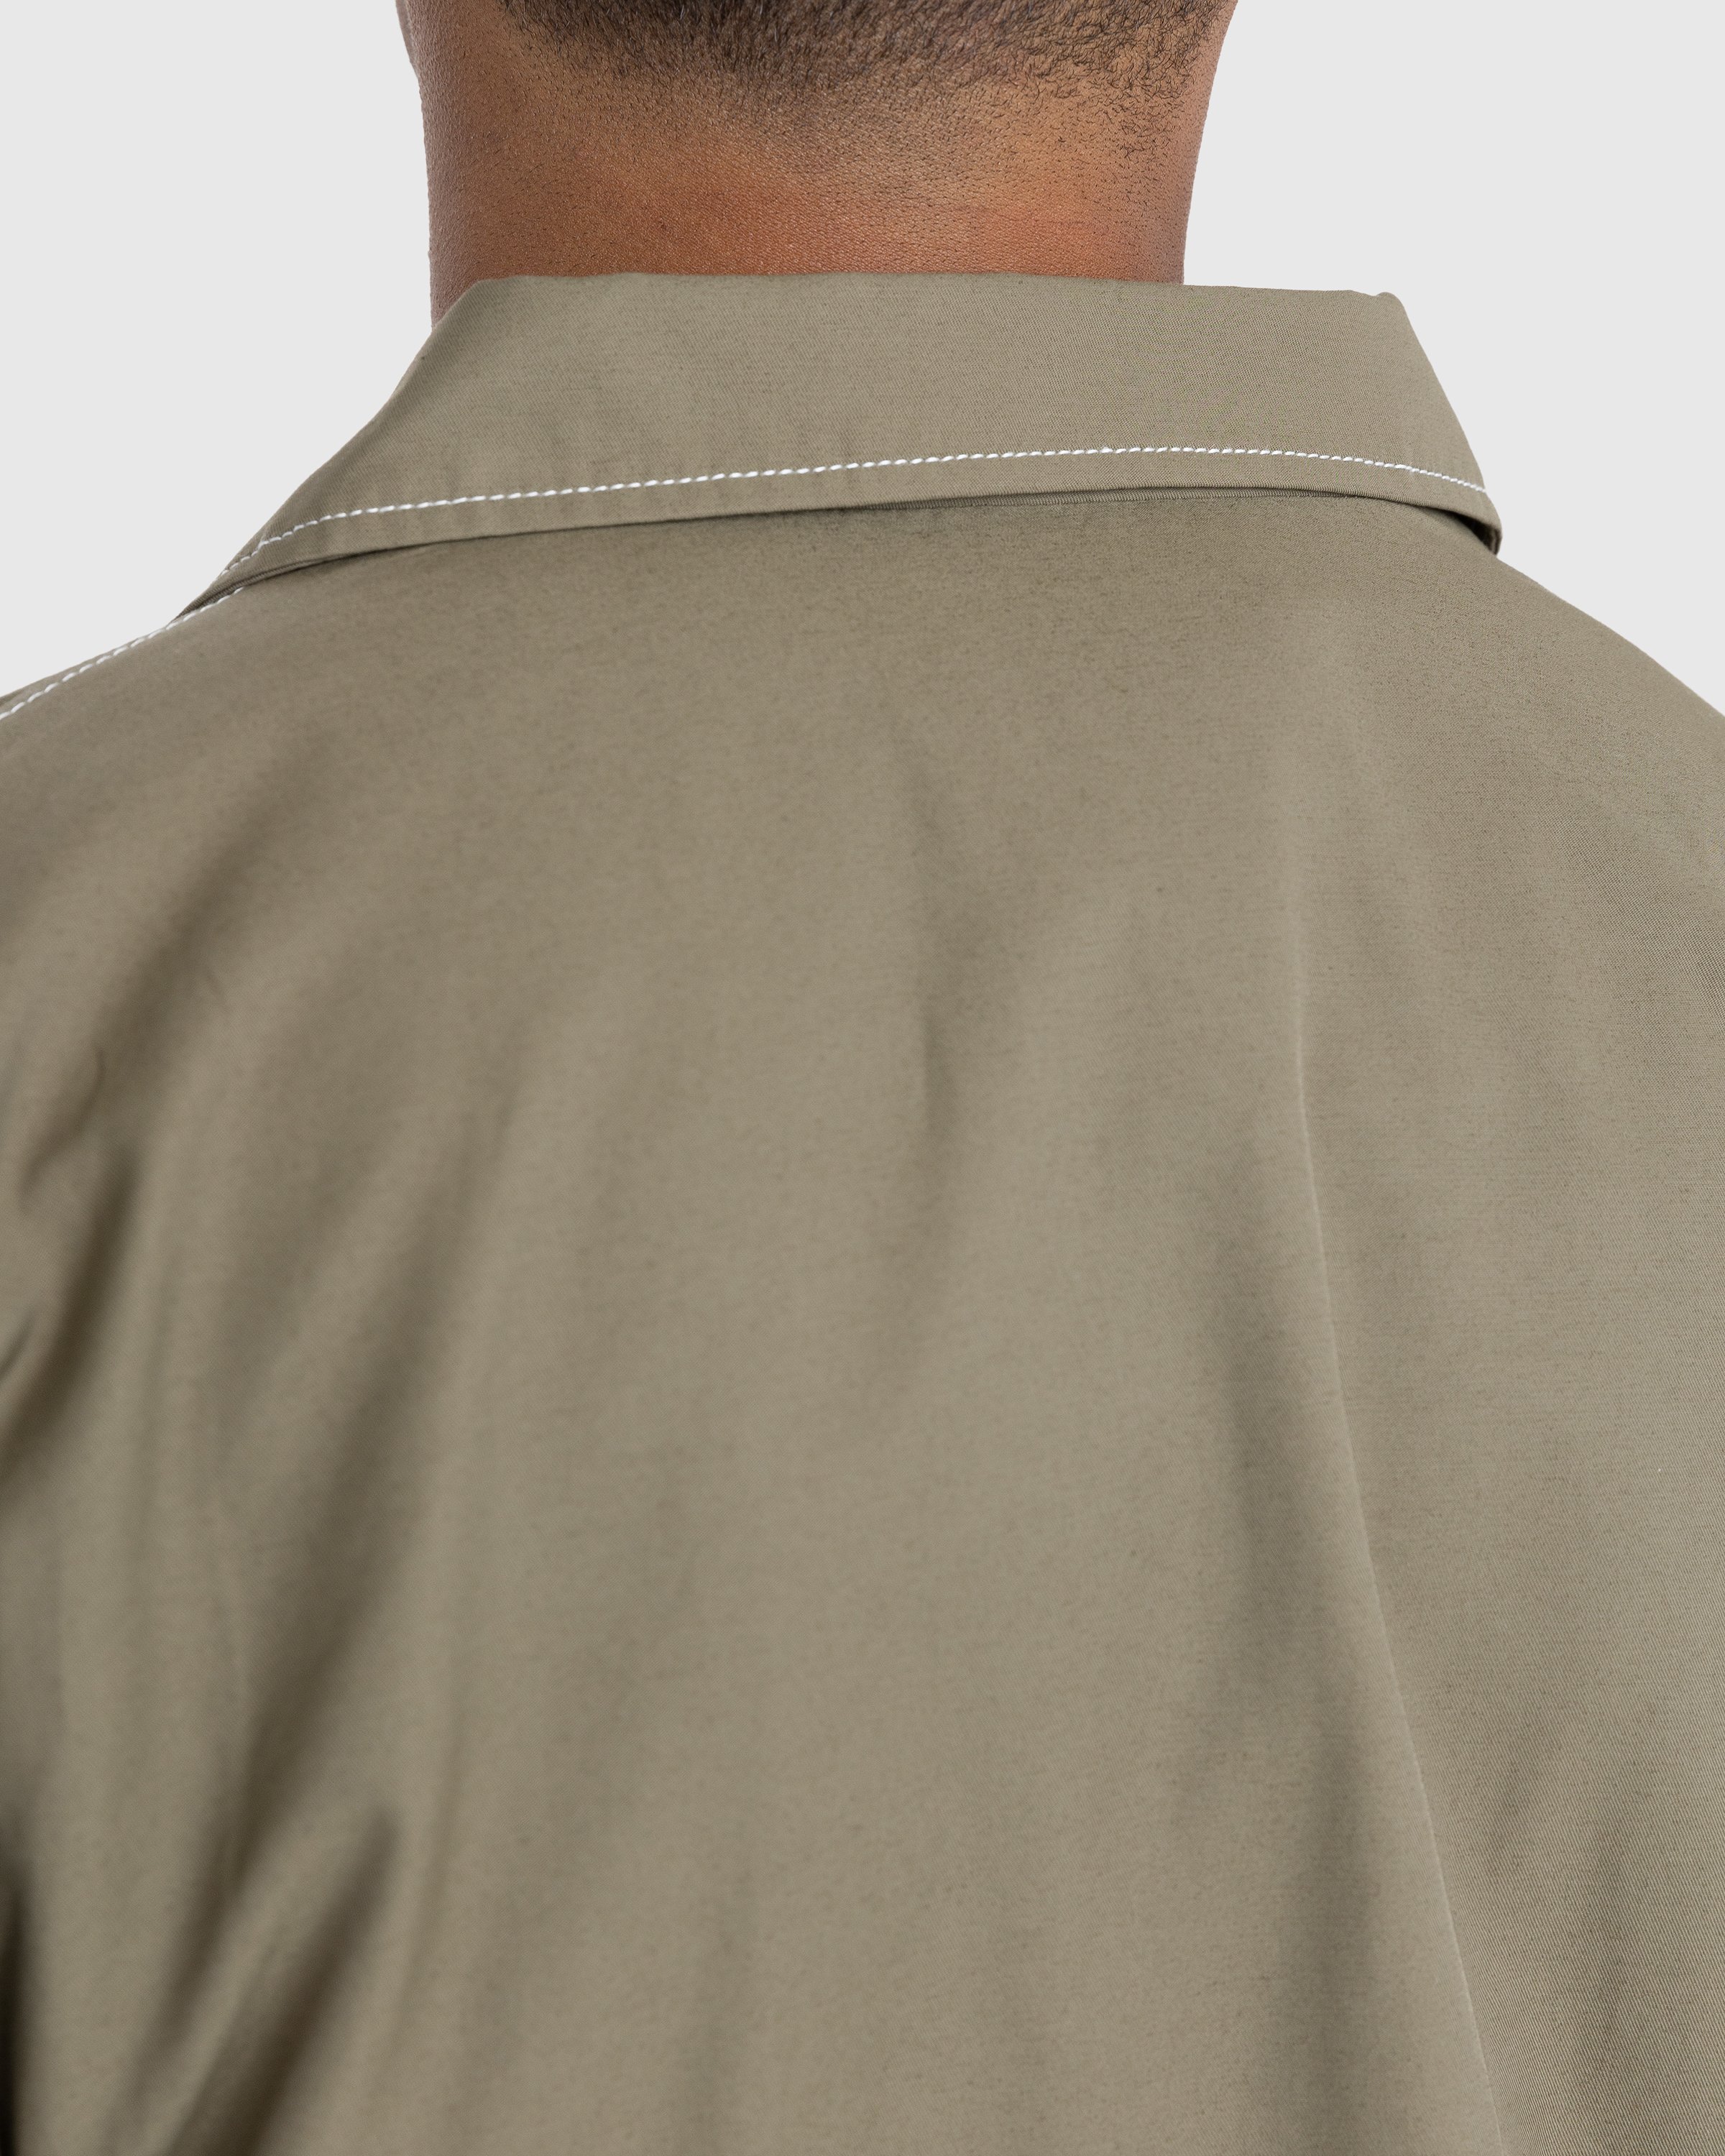 Highsnobiety - Brushed Nylon Jacket Olive - Clothing - Green - Image 6